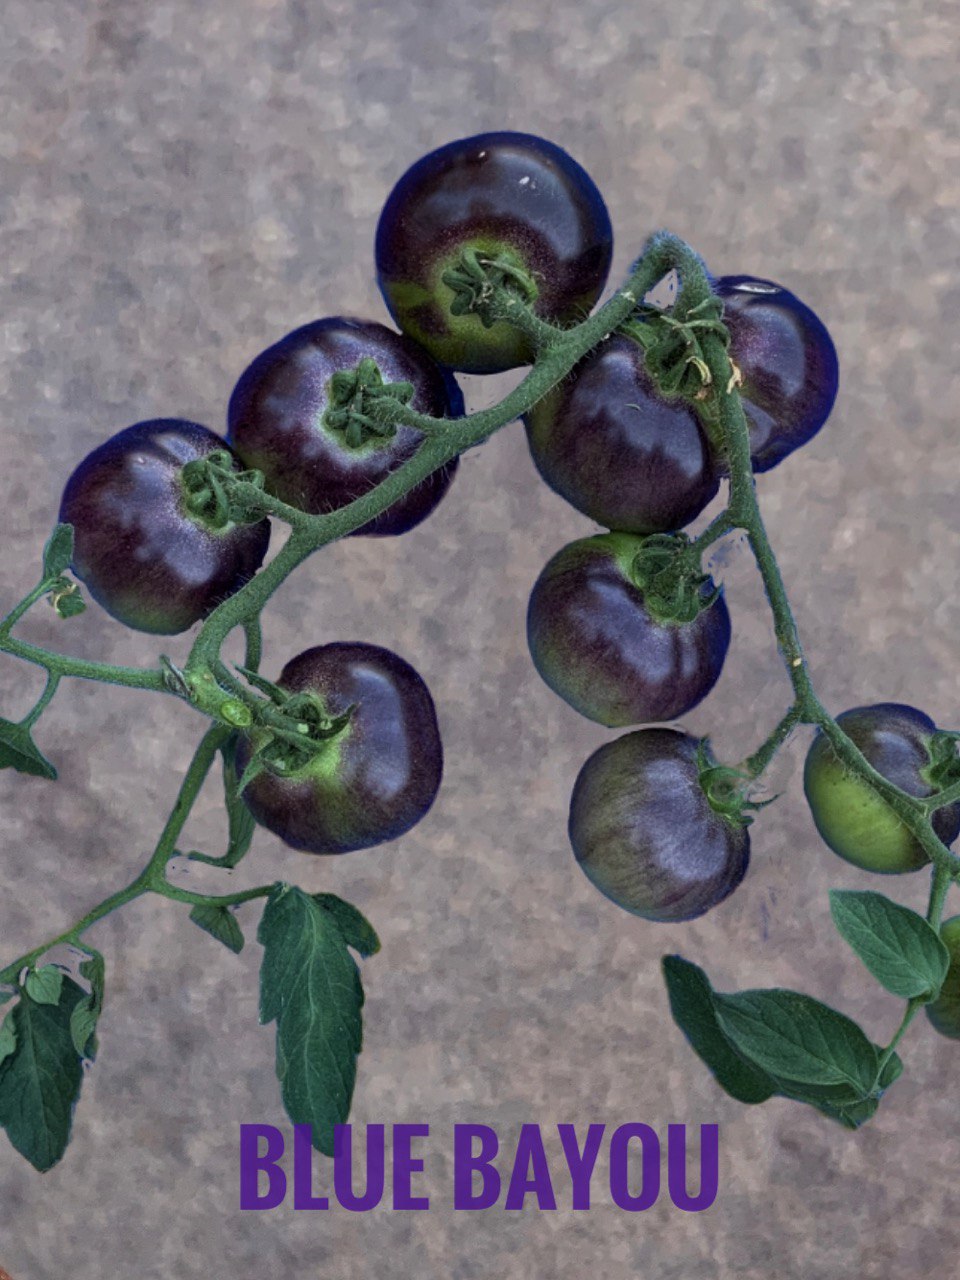 Pomodoro varietà Blue Bayou | Fattipomodorituoi | ©foto Sandra Longinotti